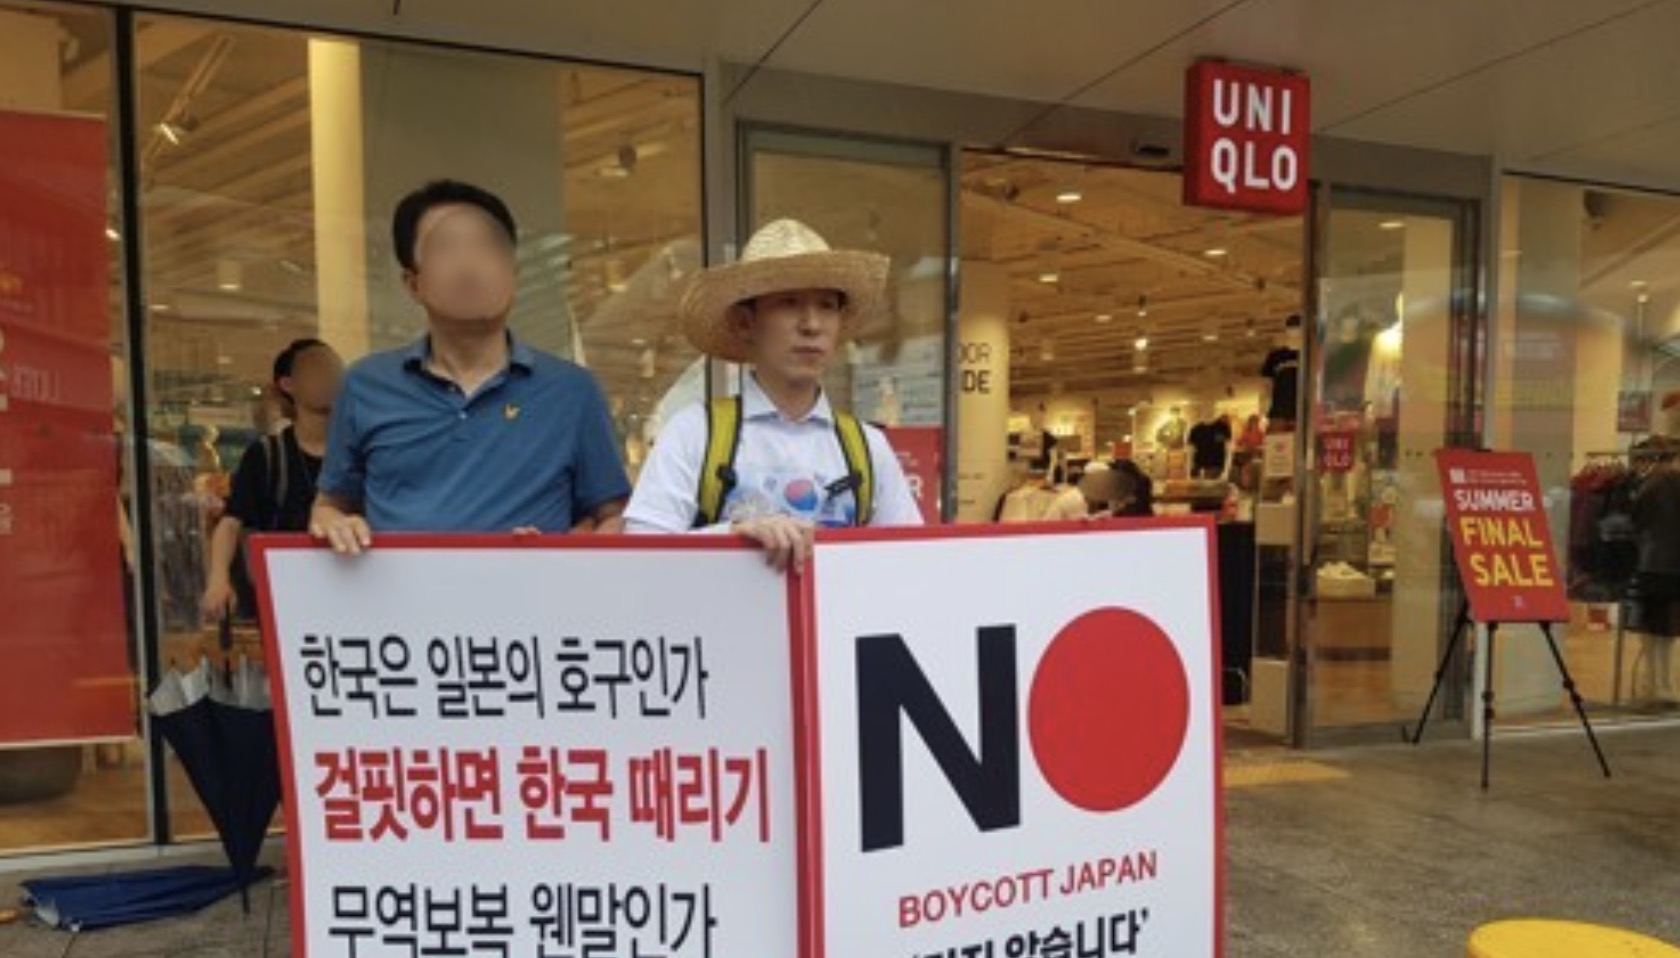 韓国でユニクロが大赤字… 韓国ネット「うれしいニュース」「不買運動の成果だ」